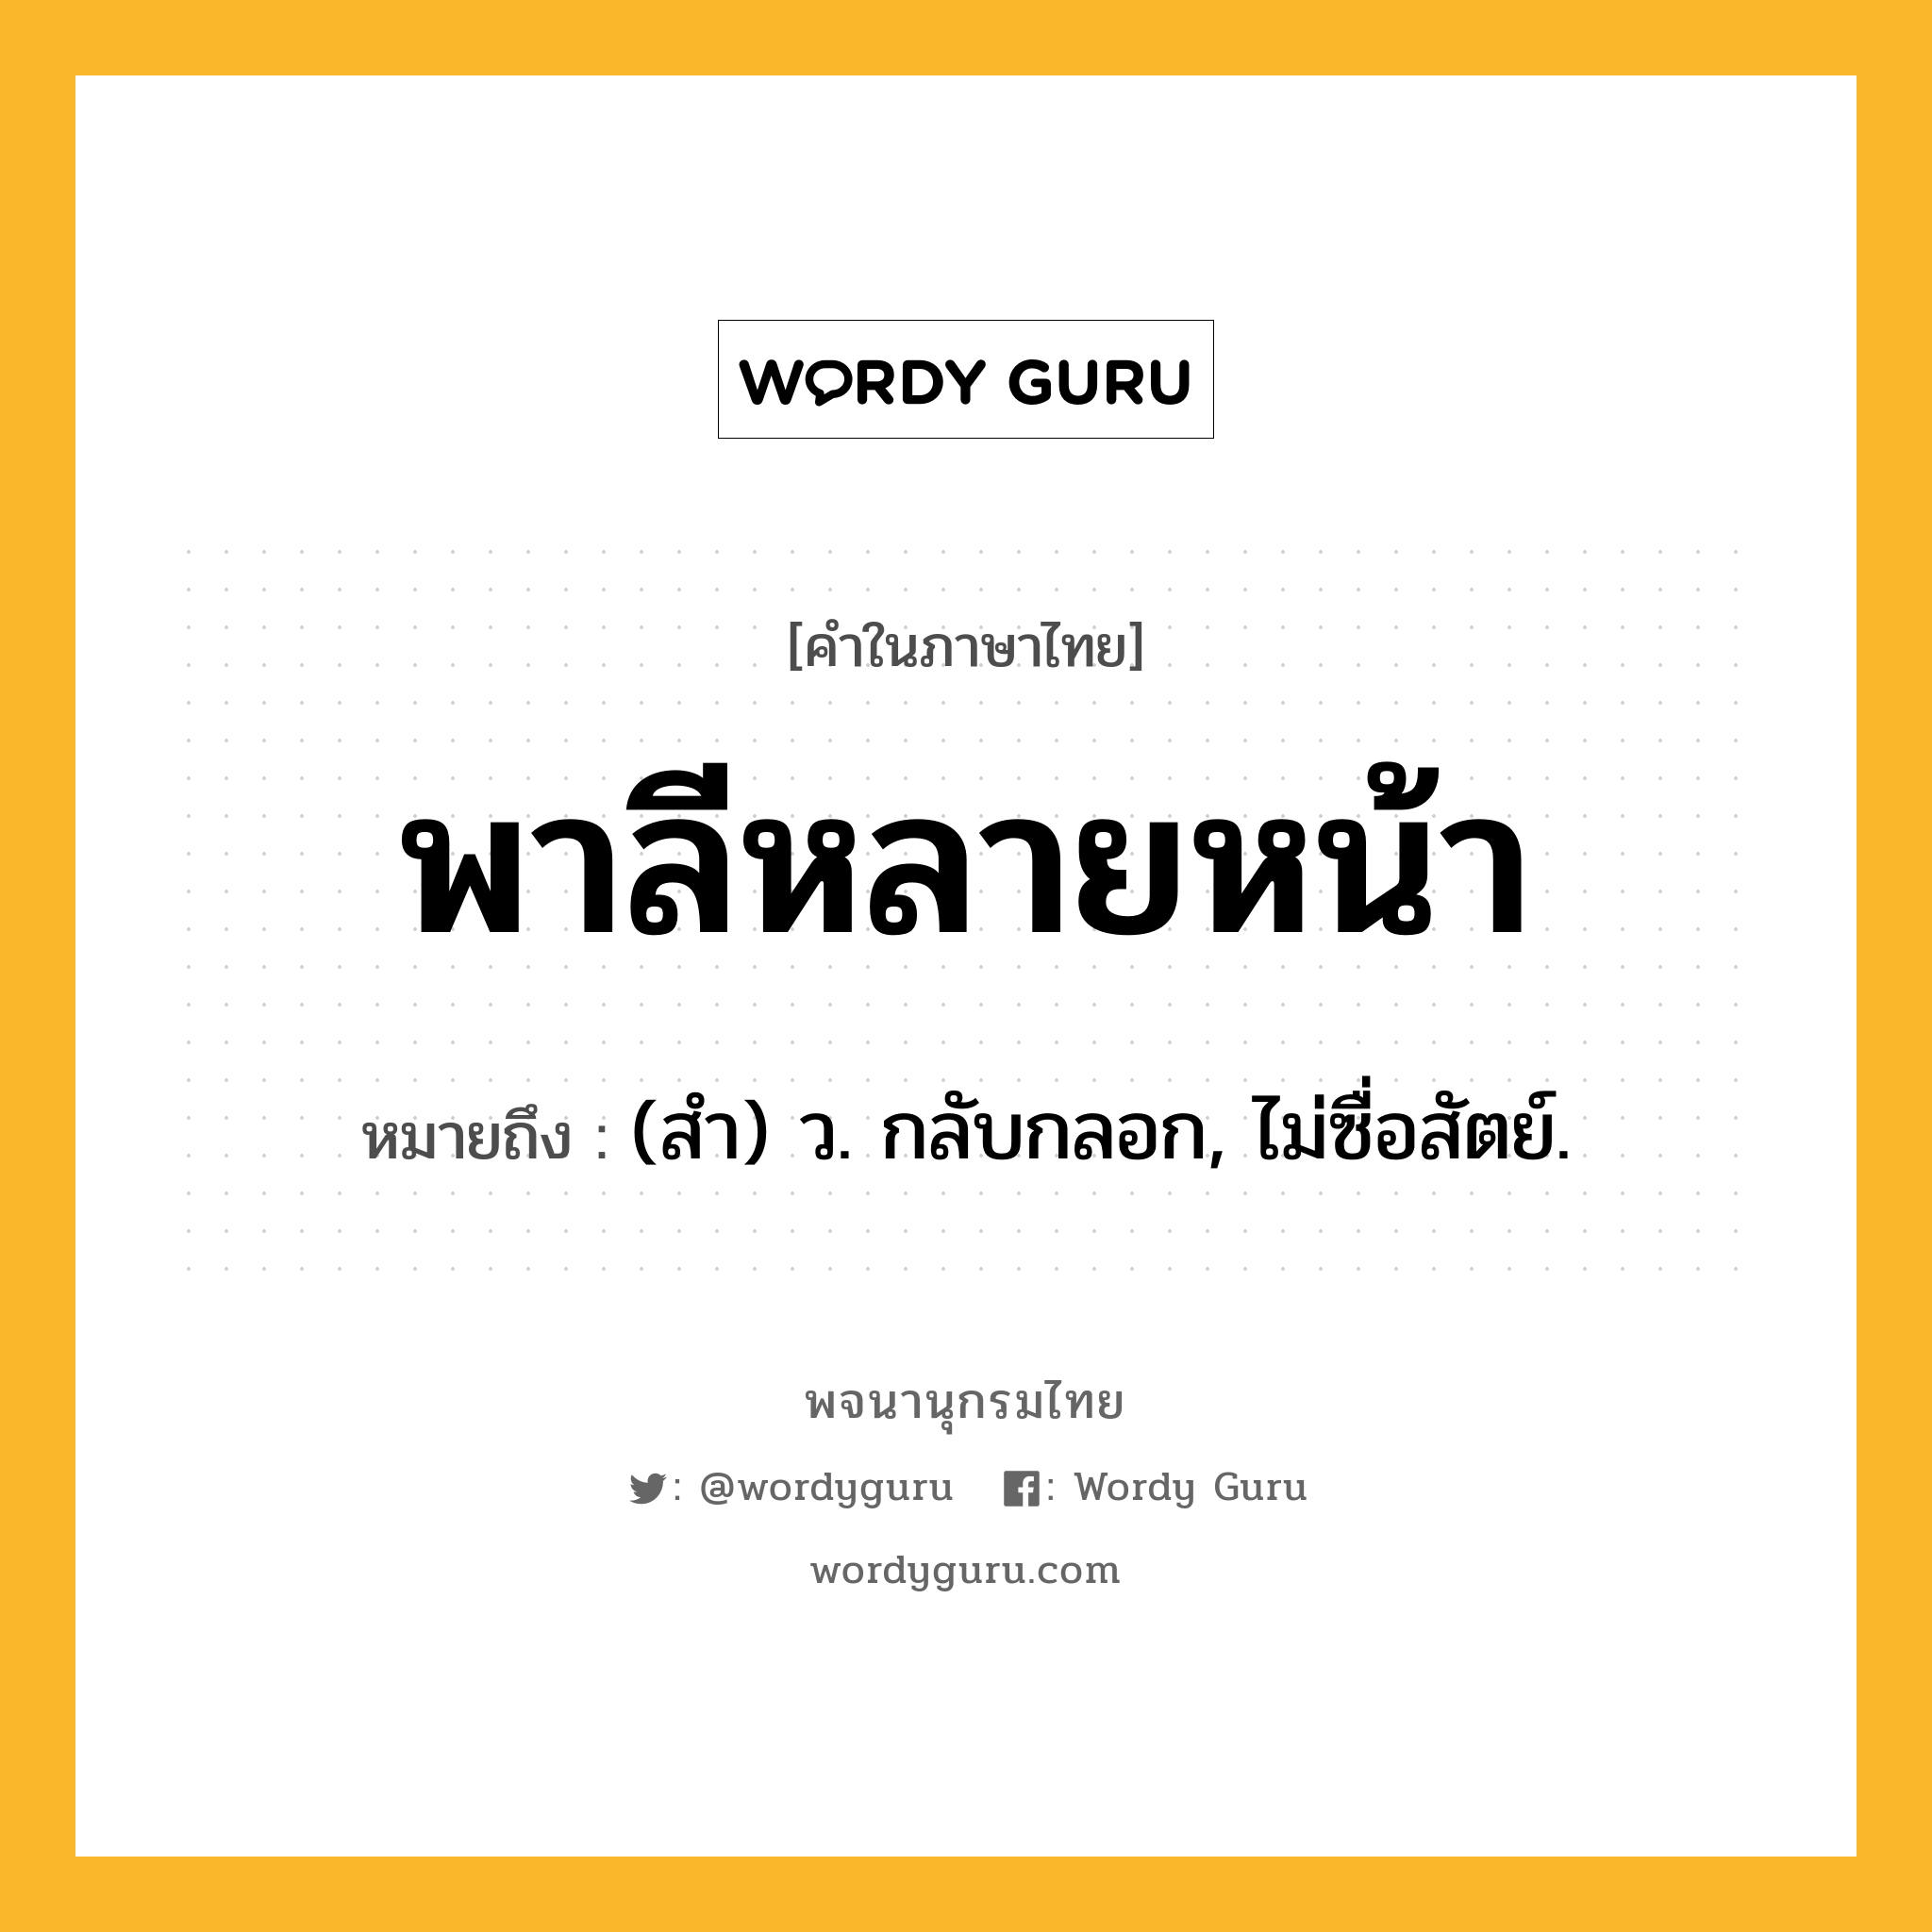 พาลีหลายหน้า ความหมาย หมายถึงอะไร?, คำในภาษาไทย พาลีหลายหน้า หมายถึง (สํา) ว. กลับกลอก, ไม่ซื่อสัตย์.